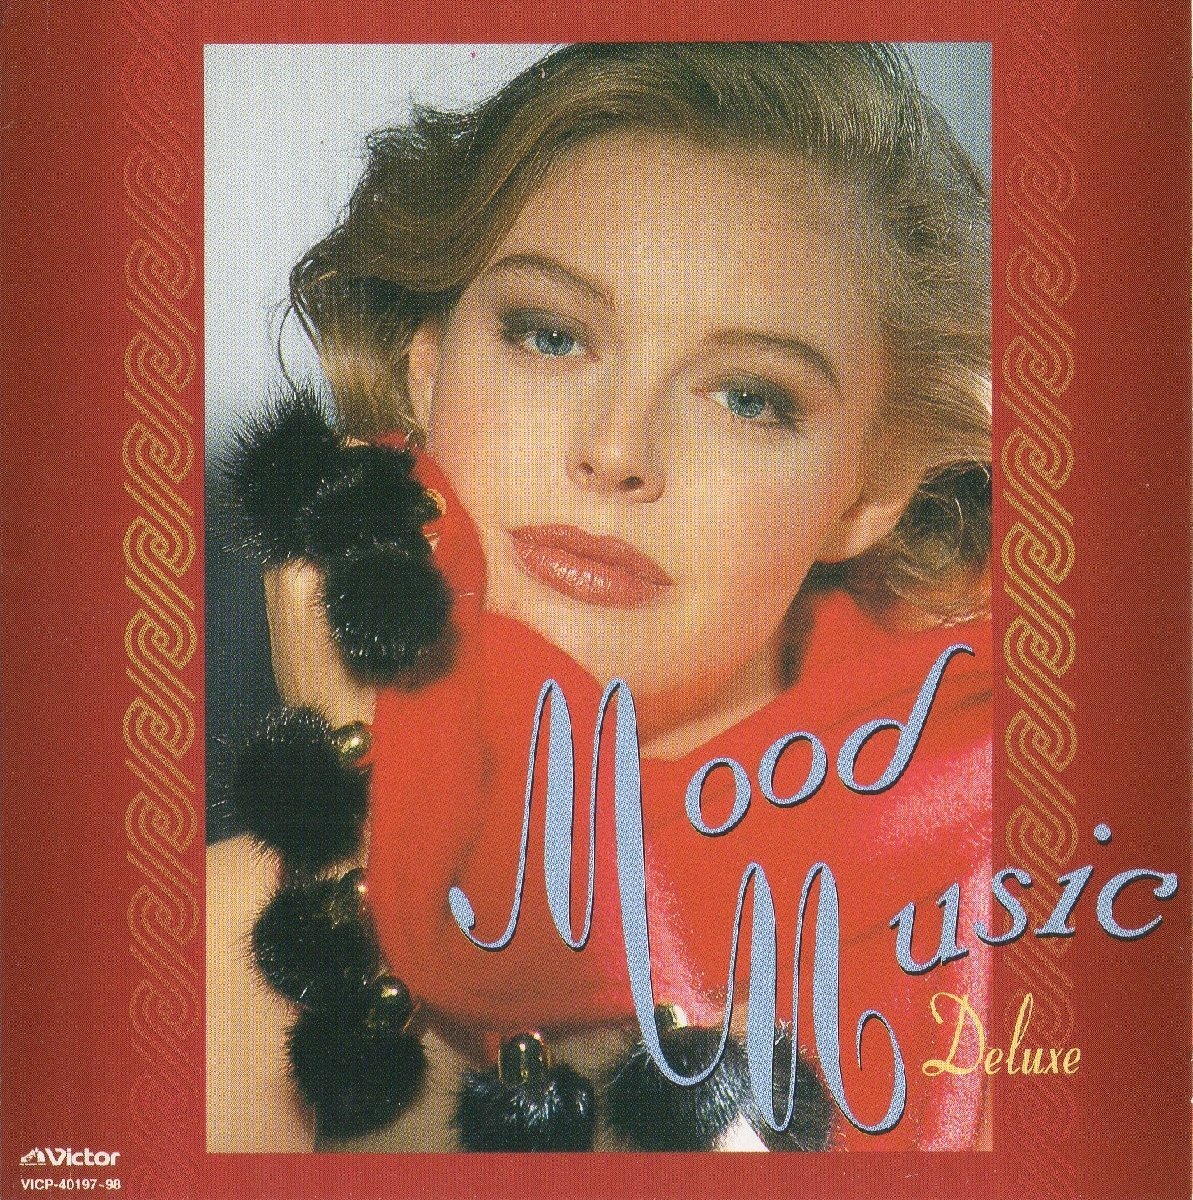 ムード音楽 MOOD MUSIC / ツイン・ベスト TWIN BEST / ニニ・ロッソ,アルフレッド・ハウゼ,ビリー・ヴォーン,他 / 2CD / VICP-40197-98_画像1